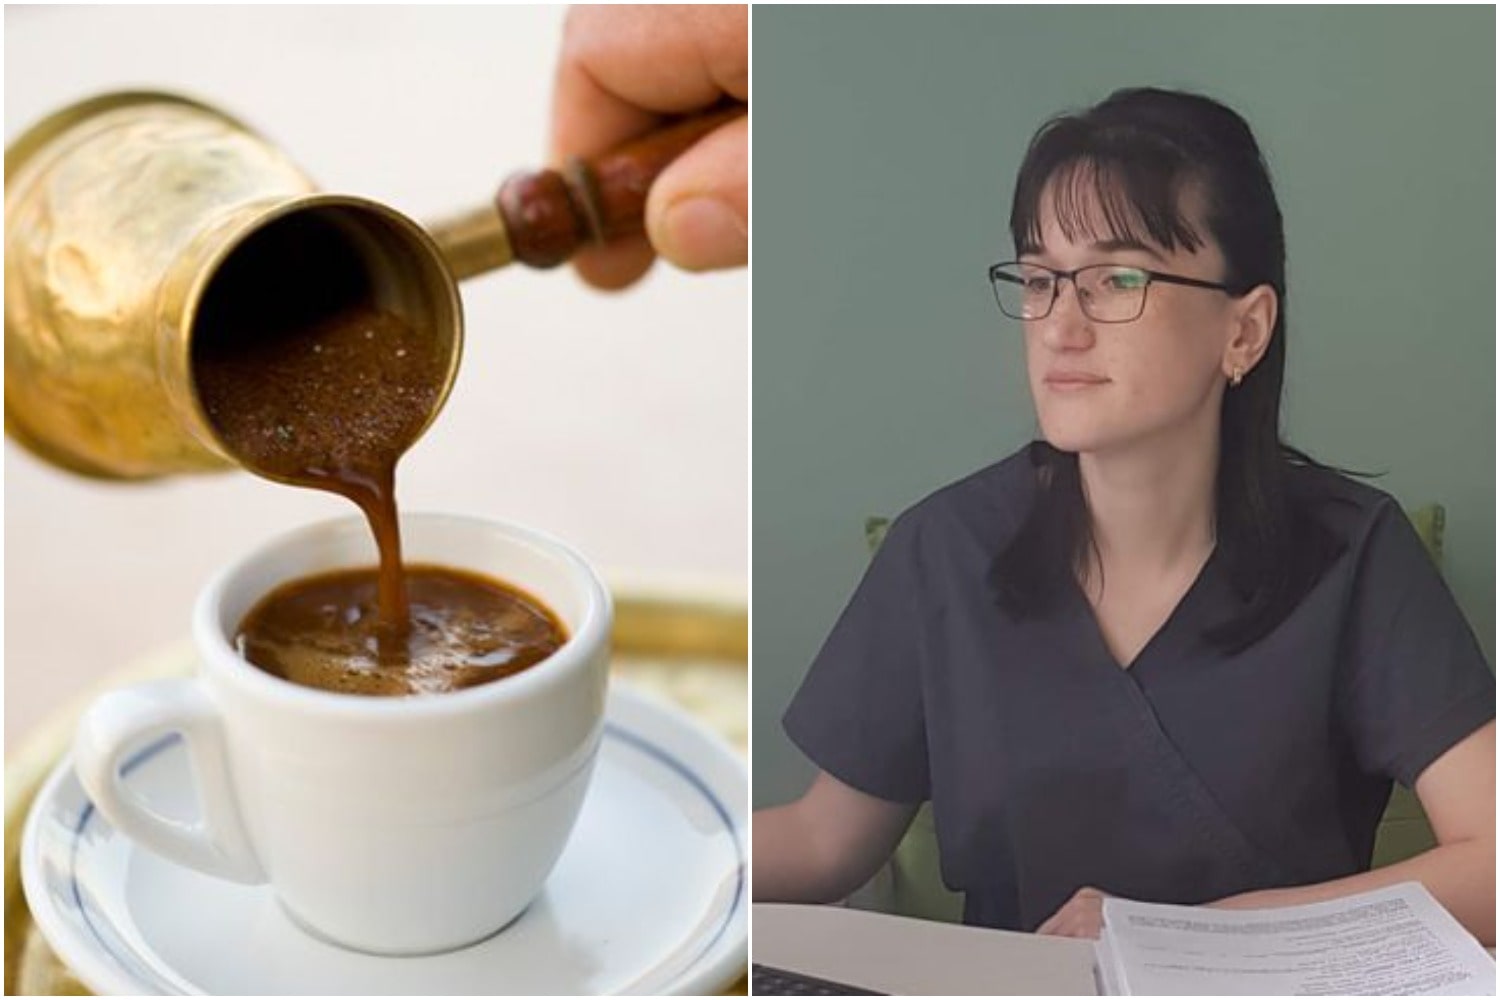 რატომ უნდა დავლიოთ წყალი ყავასთან ერთად? - ენდოკრინოლოგი ყავის შესახებ საუბრობს